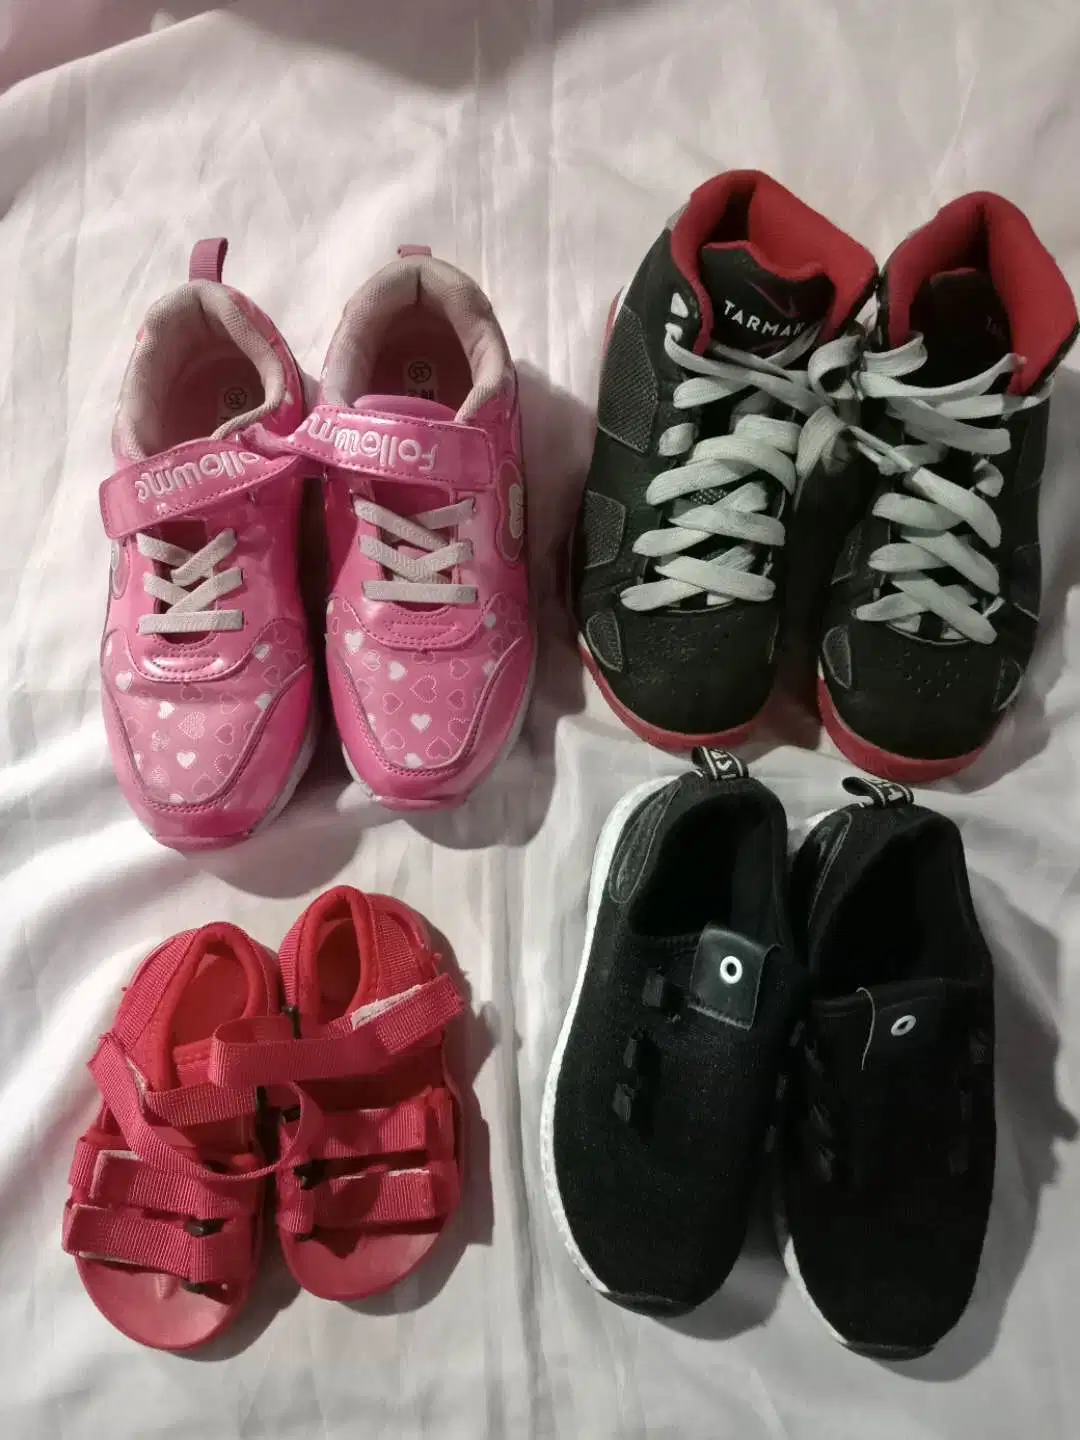 Les Meilleures Ventes De Chaussures De Baby Gebrauchte Kleidung